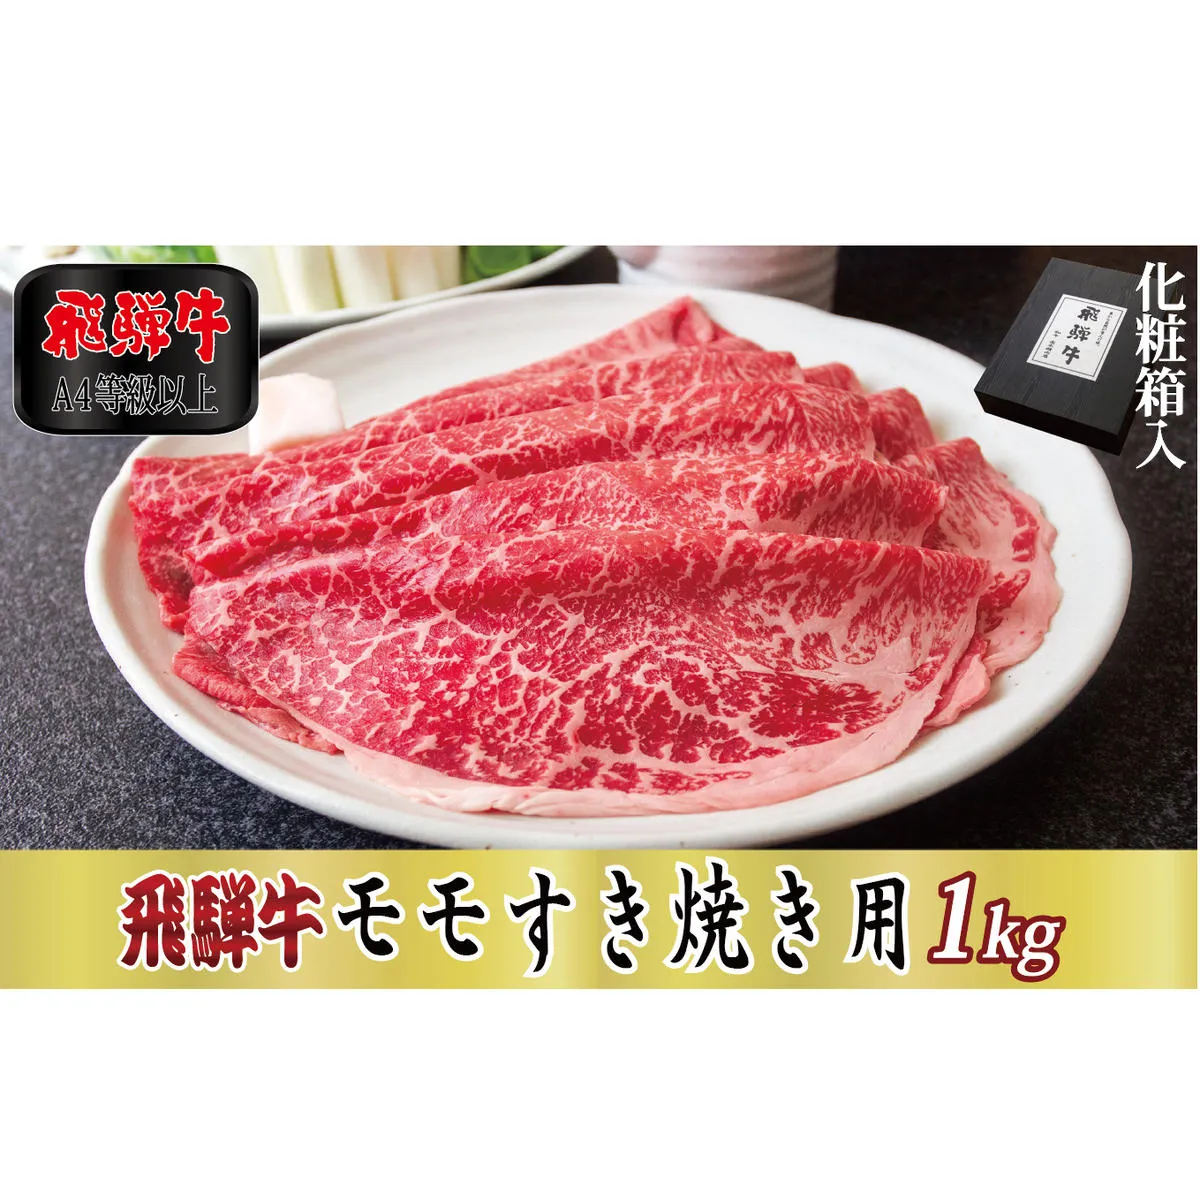 【化粧箱入り・A4等級以上】飛騨牛モモすき焼き用1kg